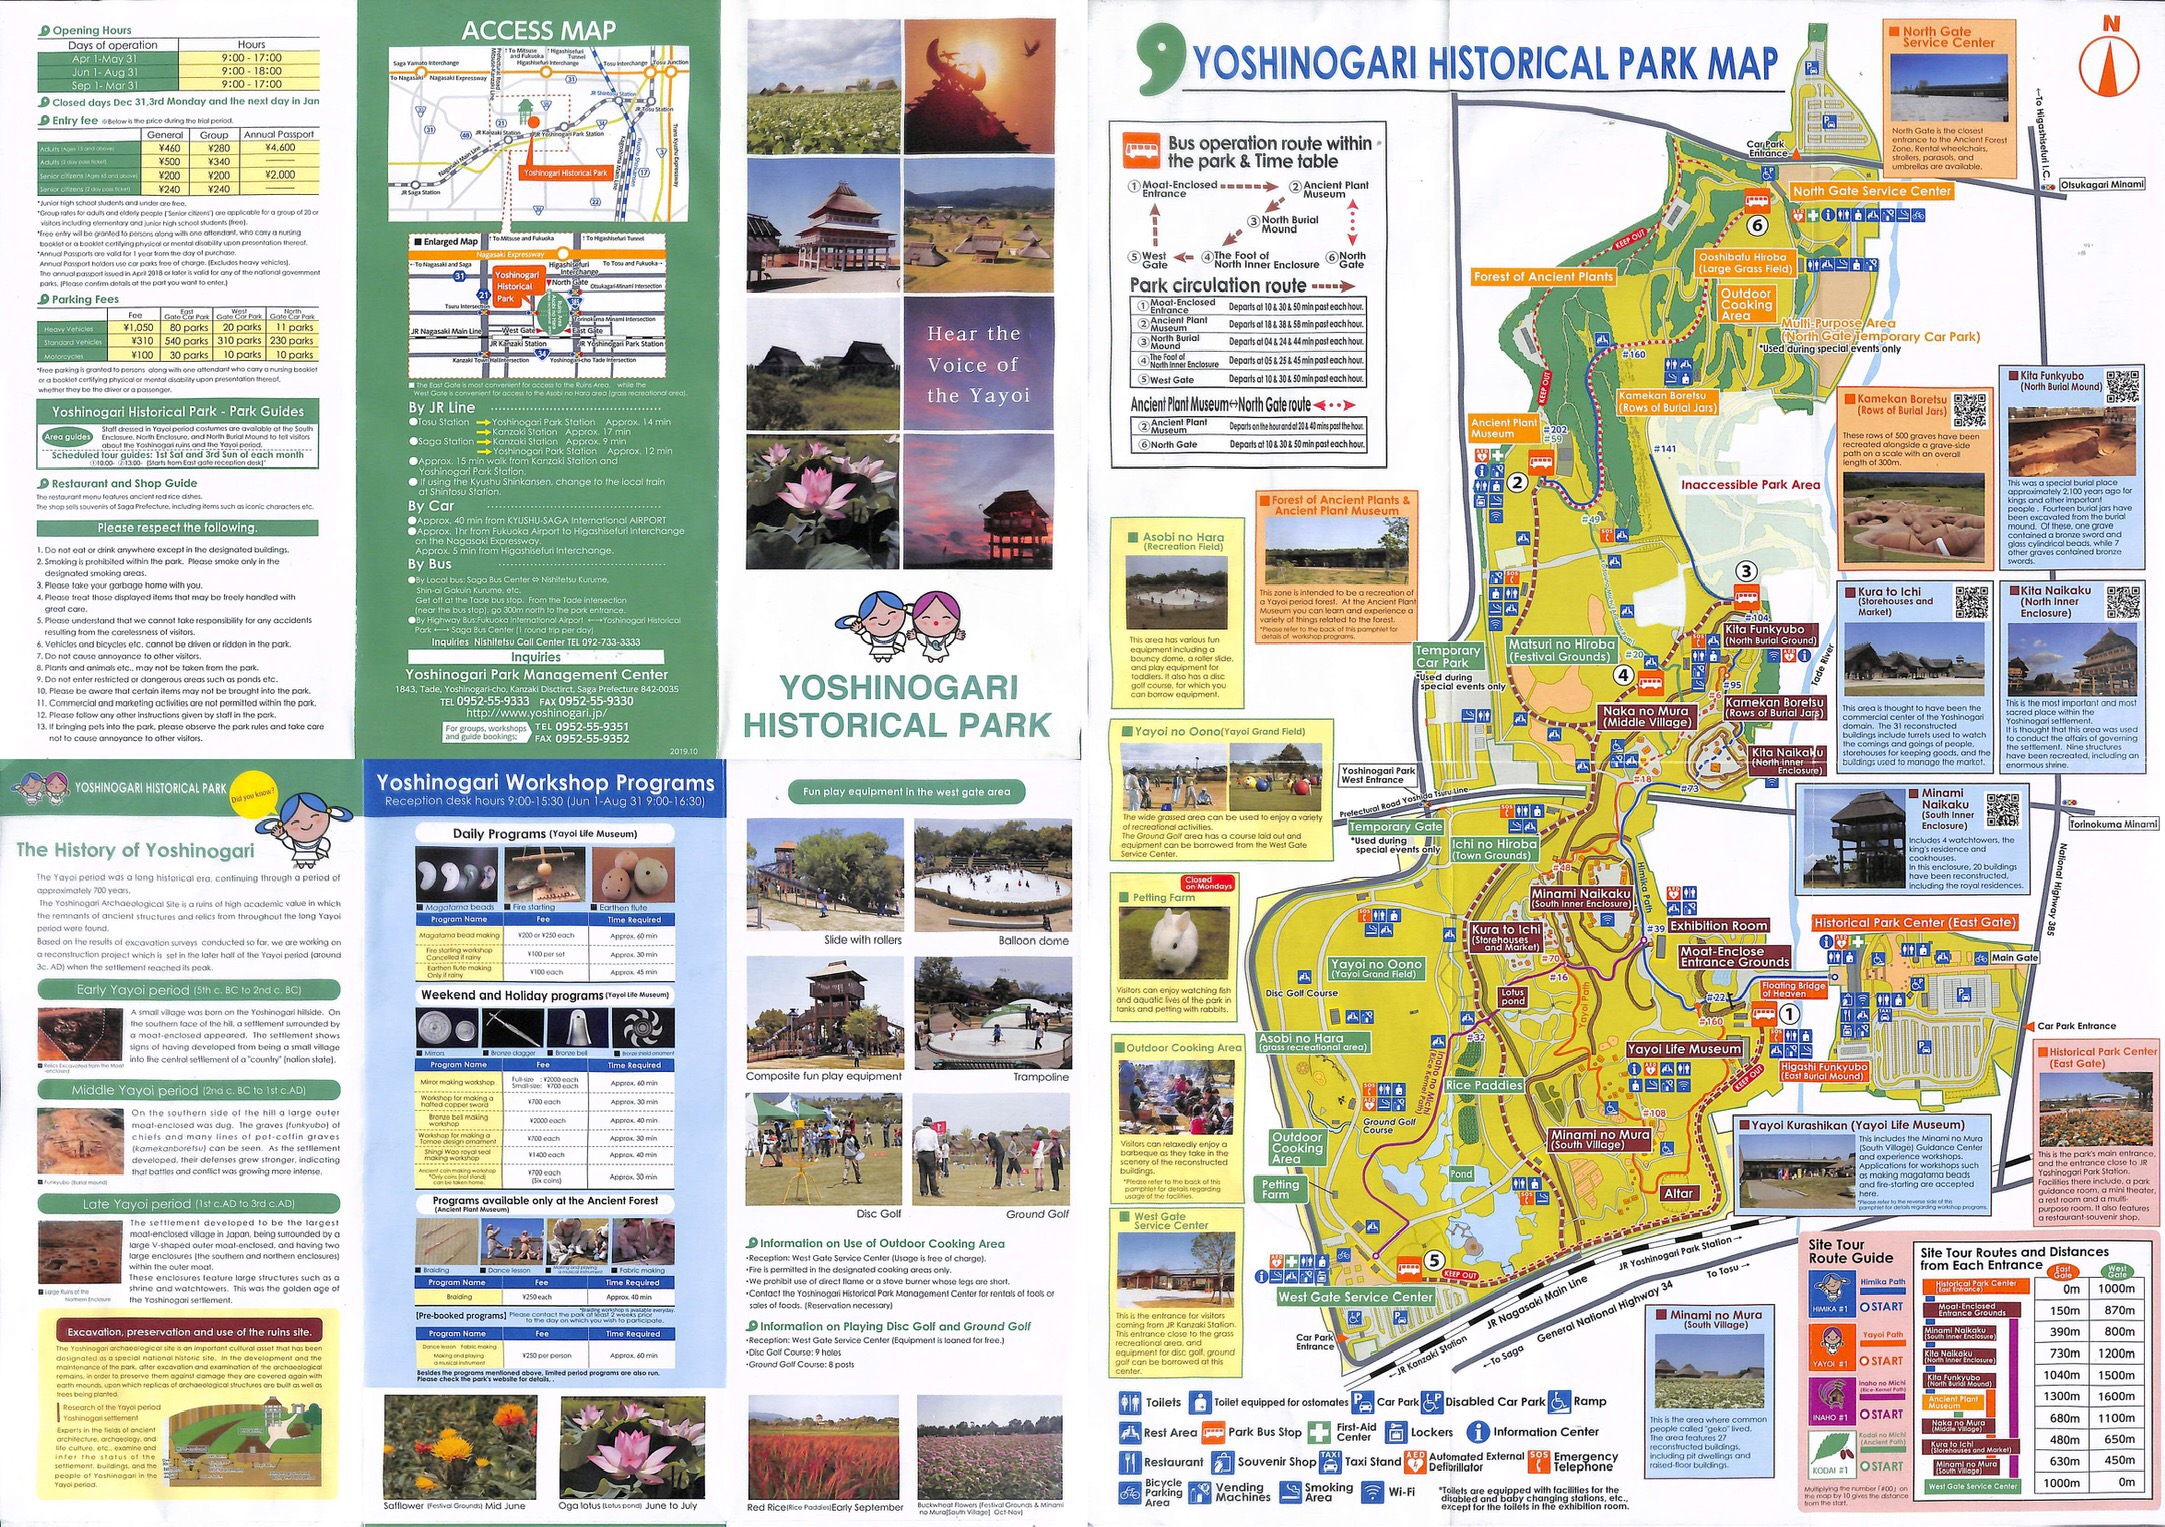 YOSHINOGARI HISTORICAL PARK